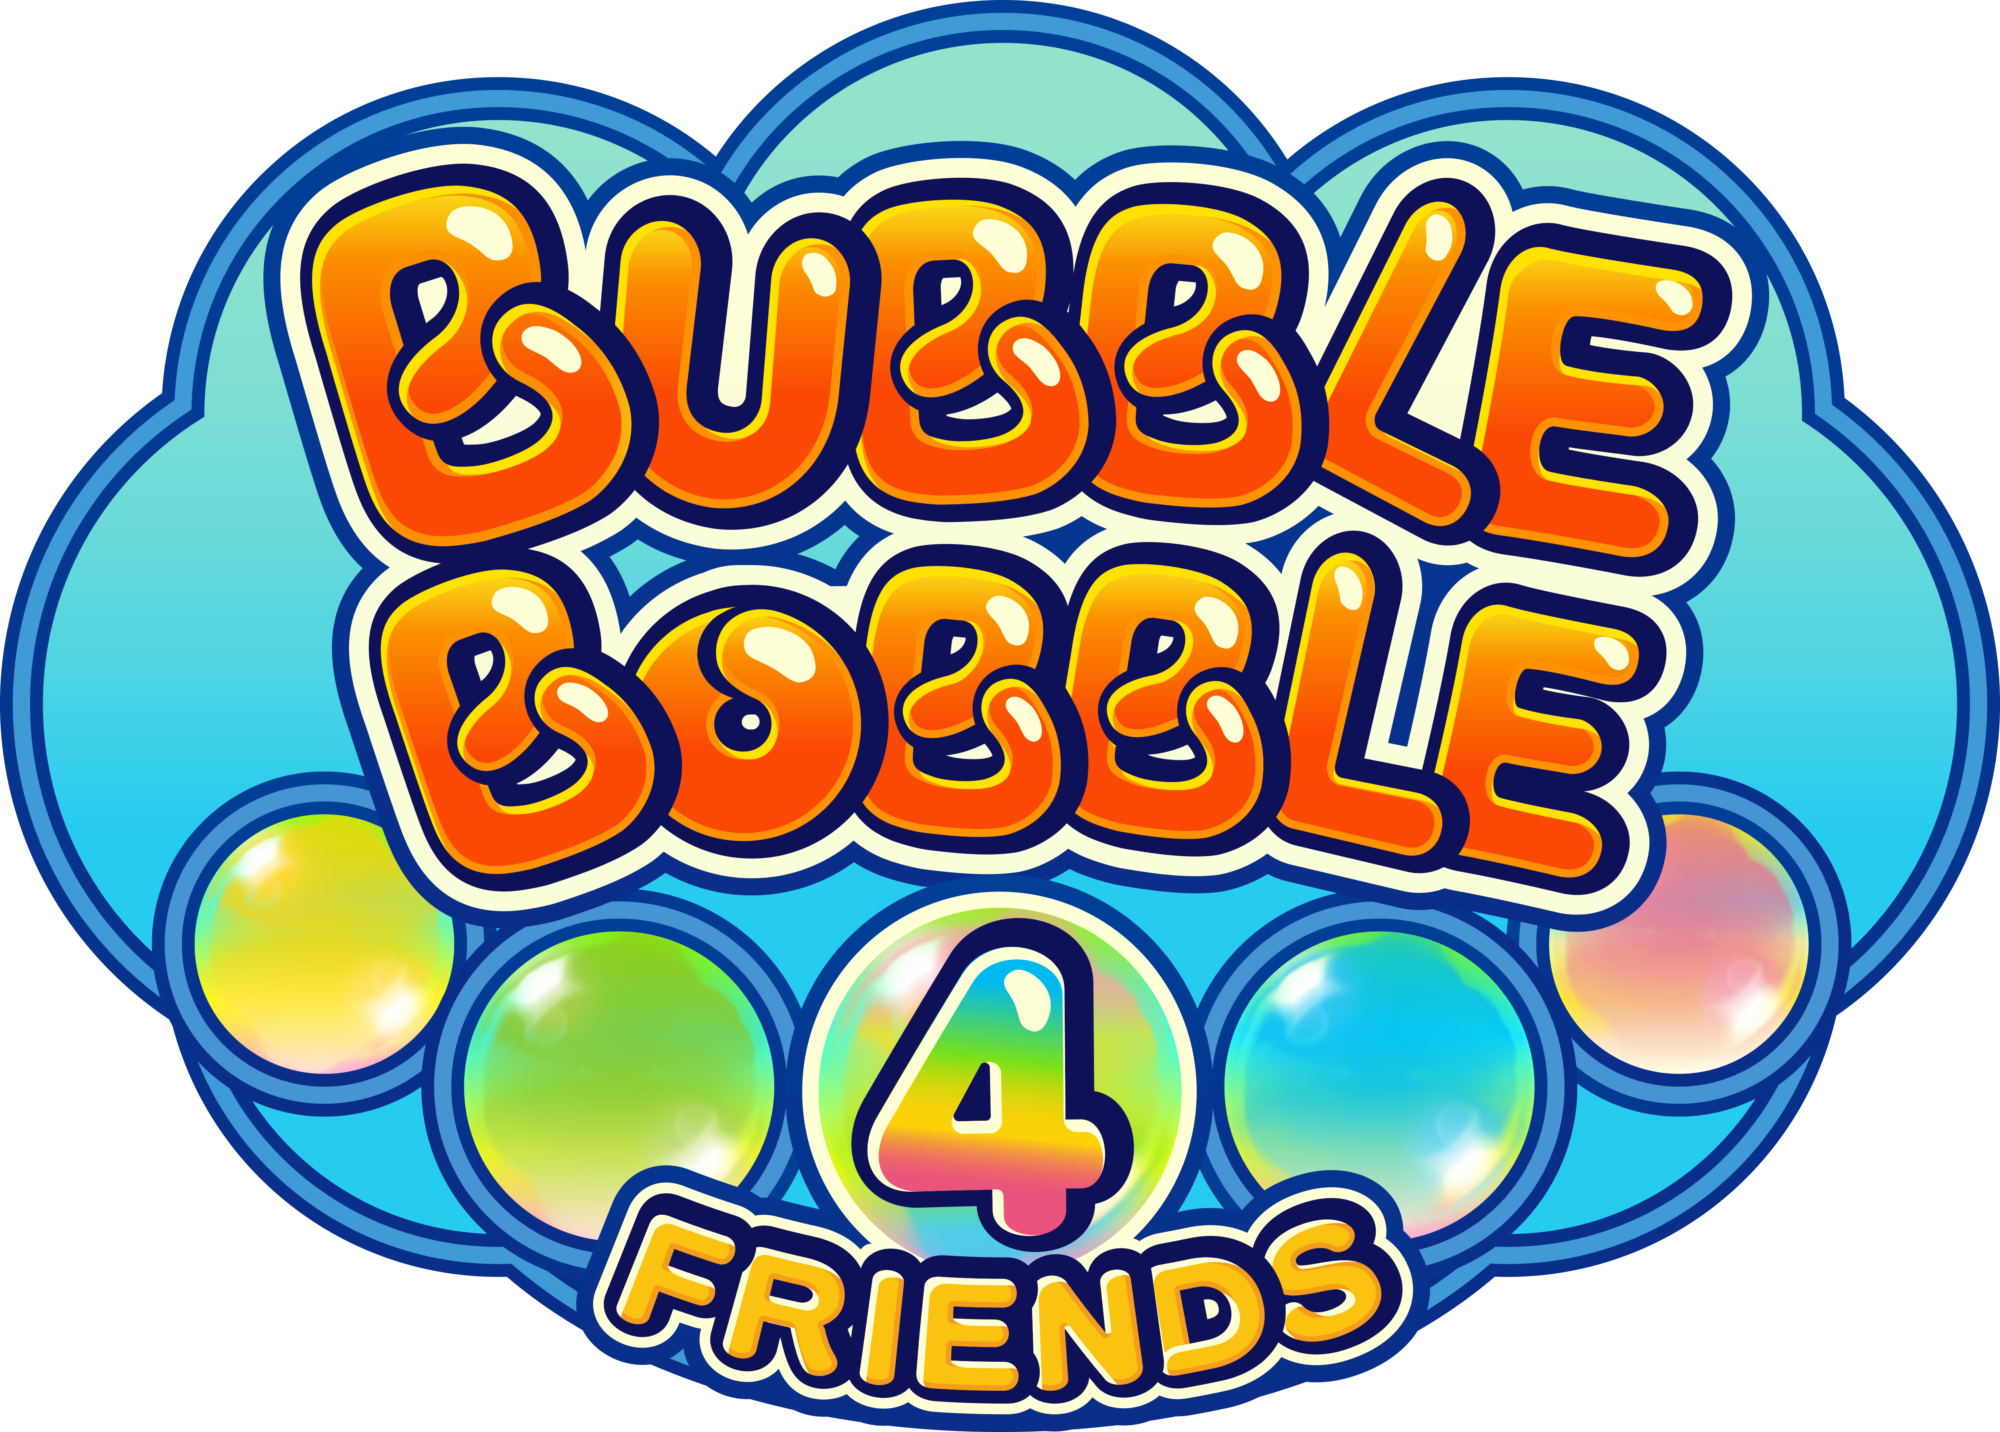 Bubble Bobble 4 Friends será lançado na América do Norte em 31 de março